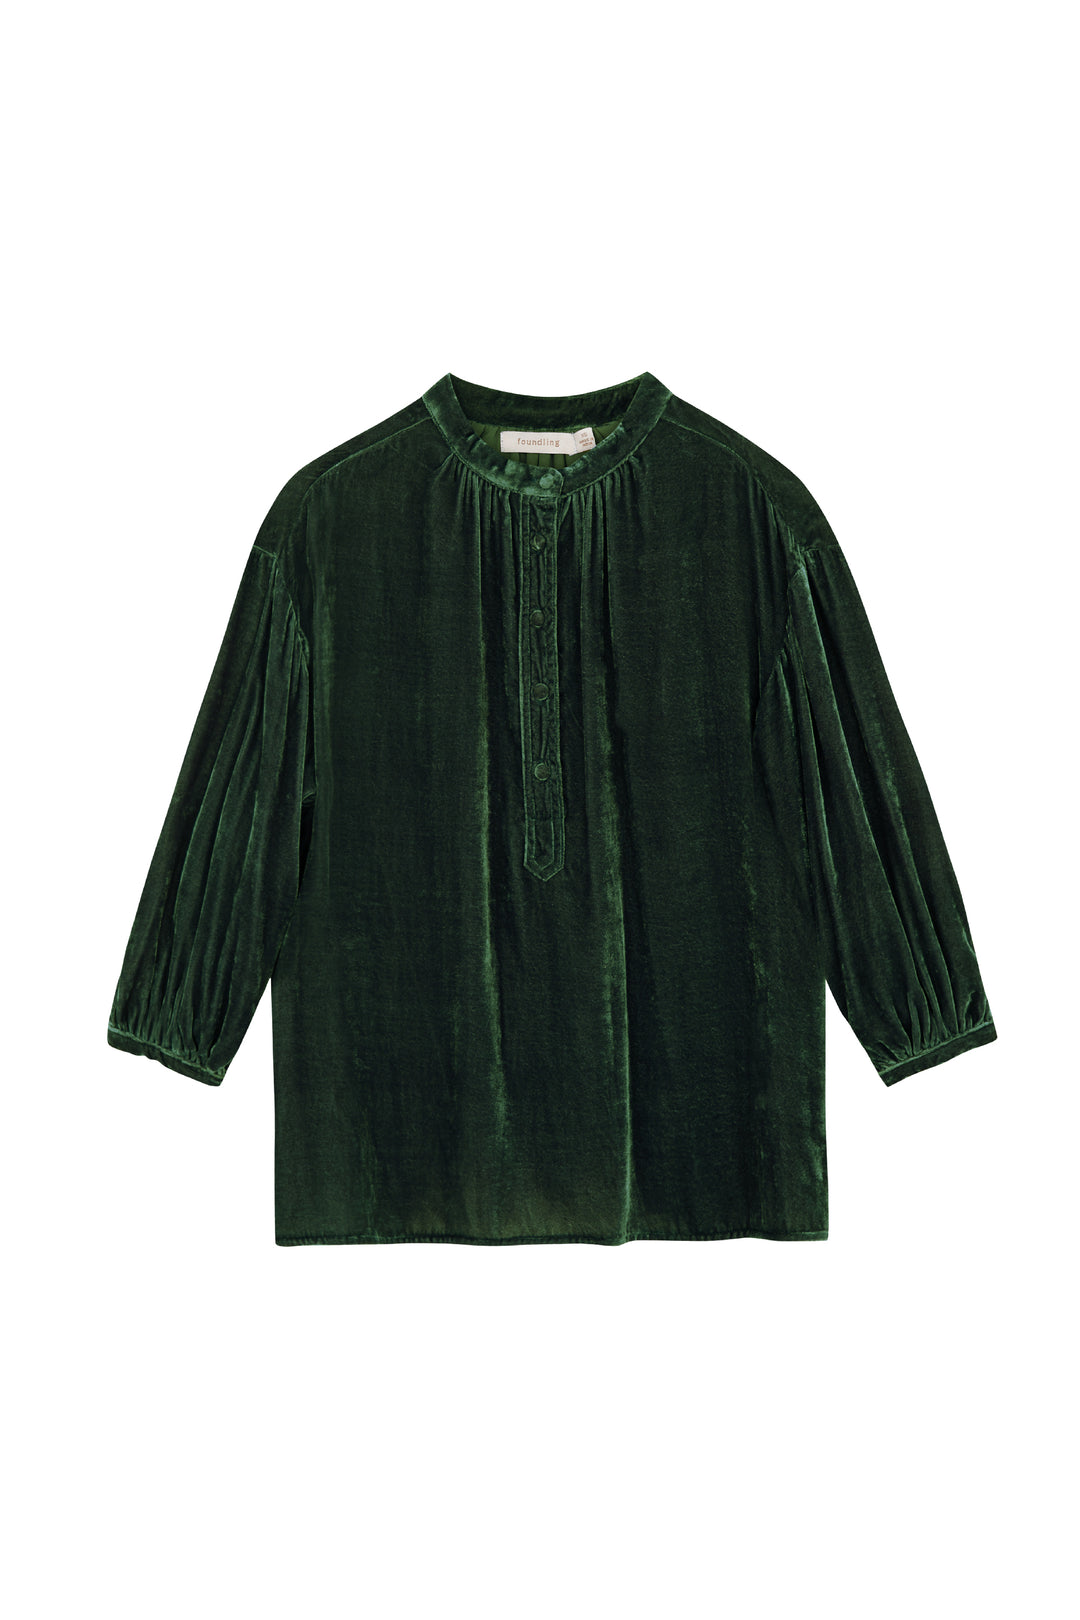 foundling silk velvet button blouse in green verte